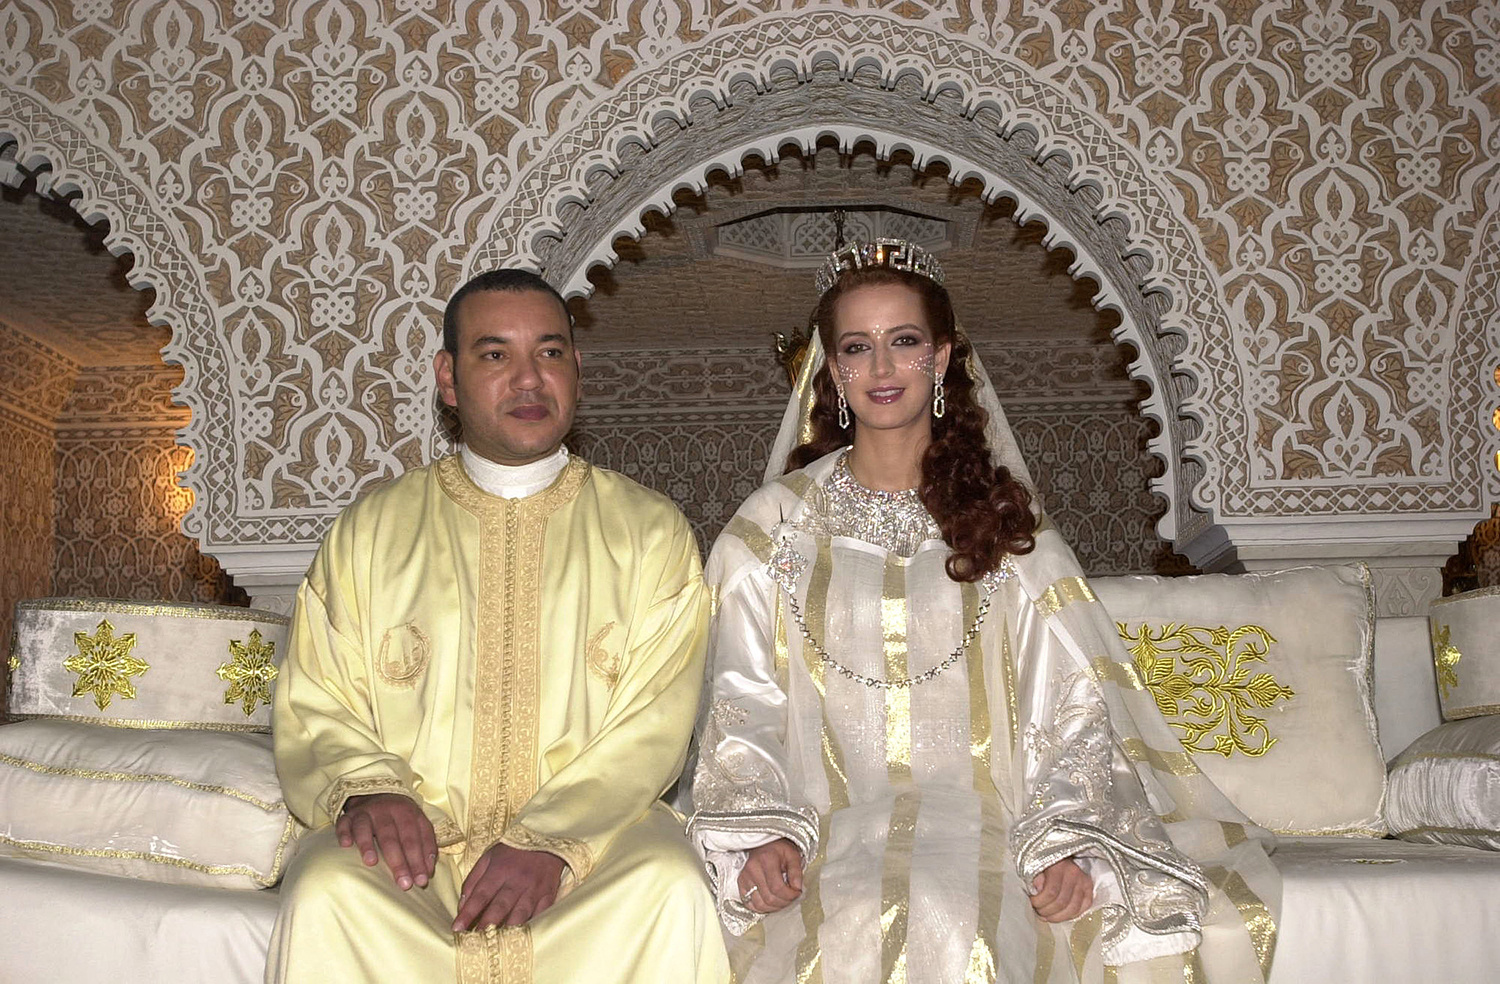 keresés nő házassága marokkó keresek férfiak talk